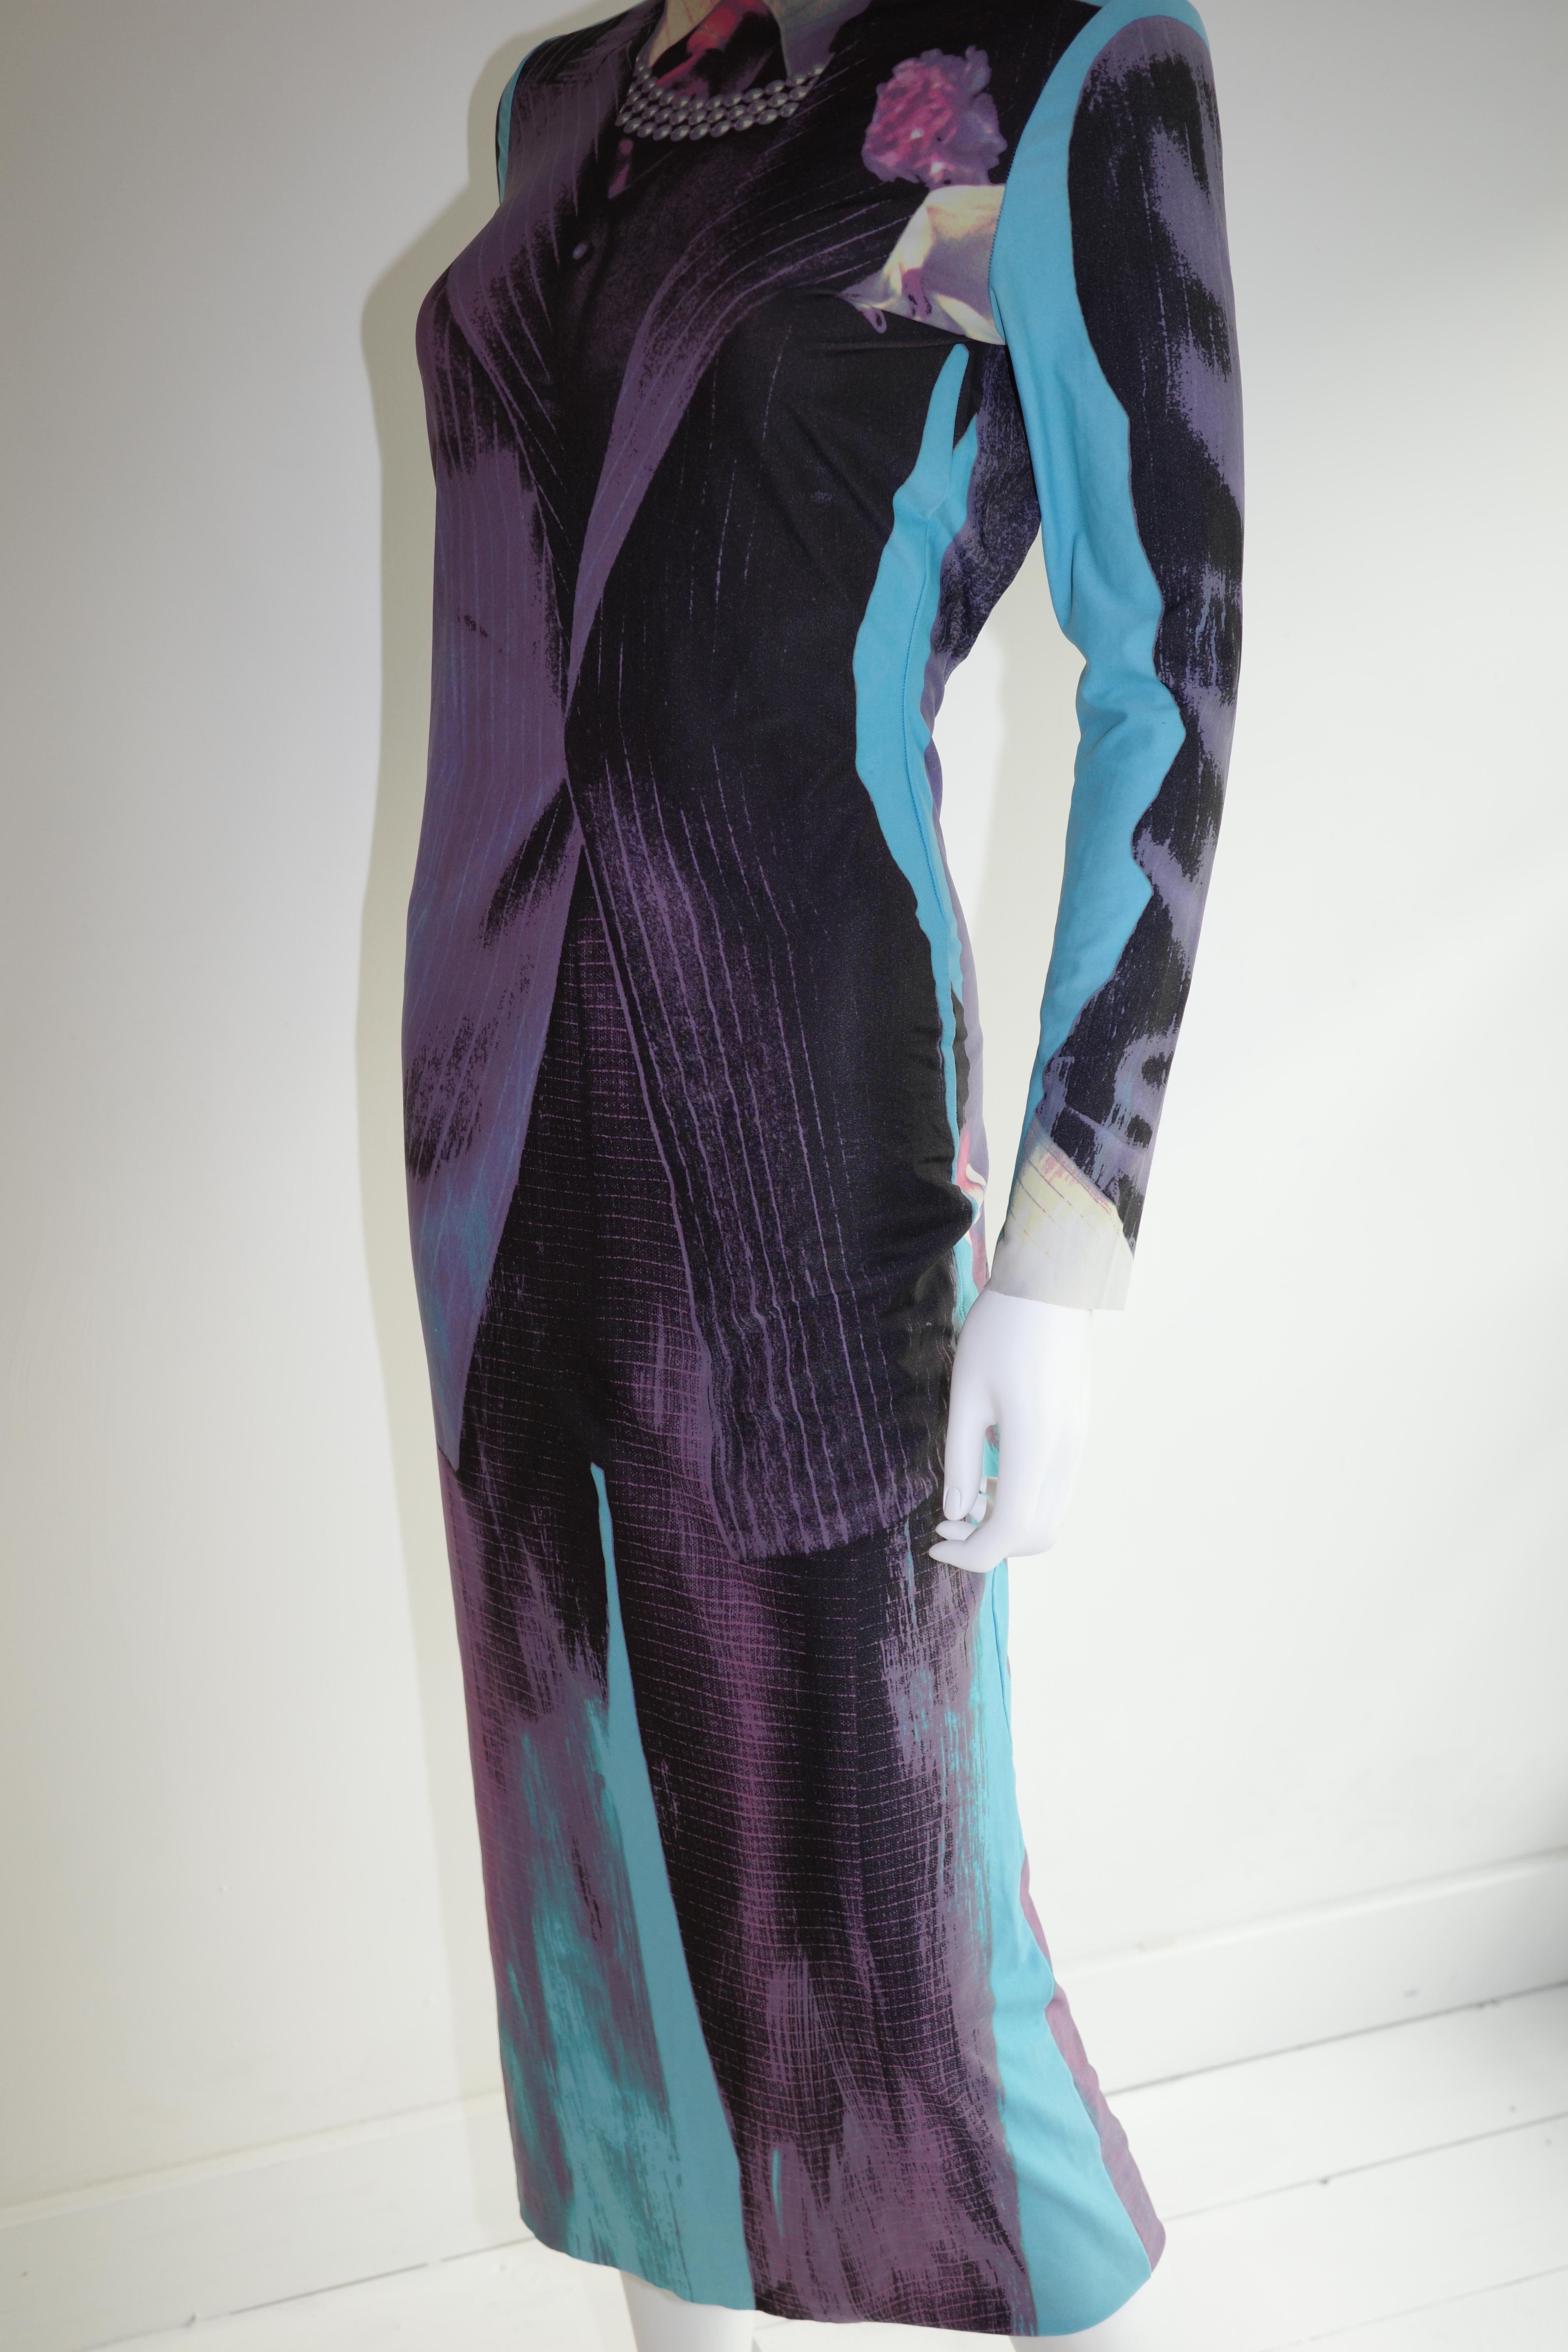 Jean Paul Gaultier A/W 1996 Tuxedo Print Dress  For Sale 2